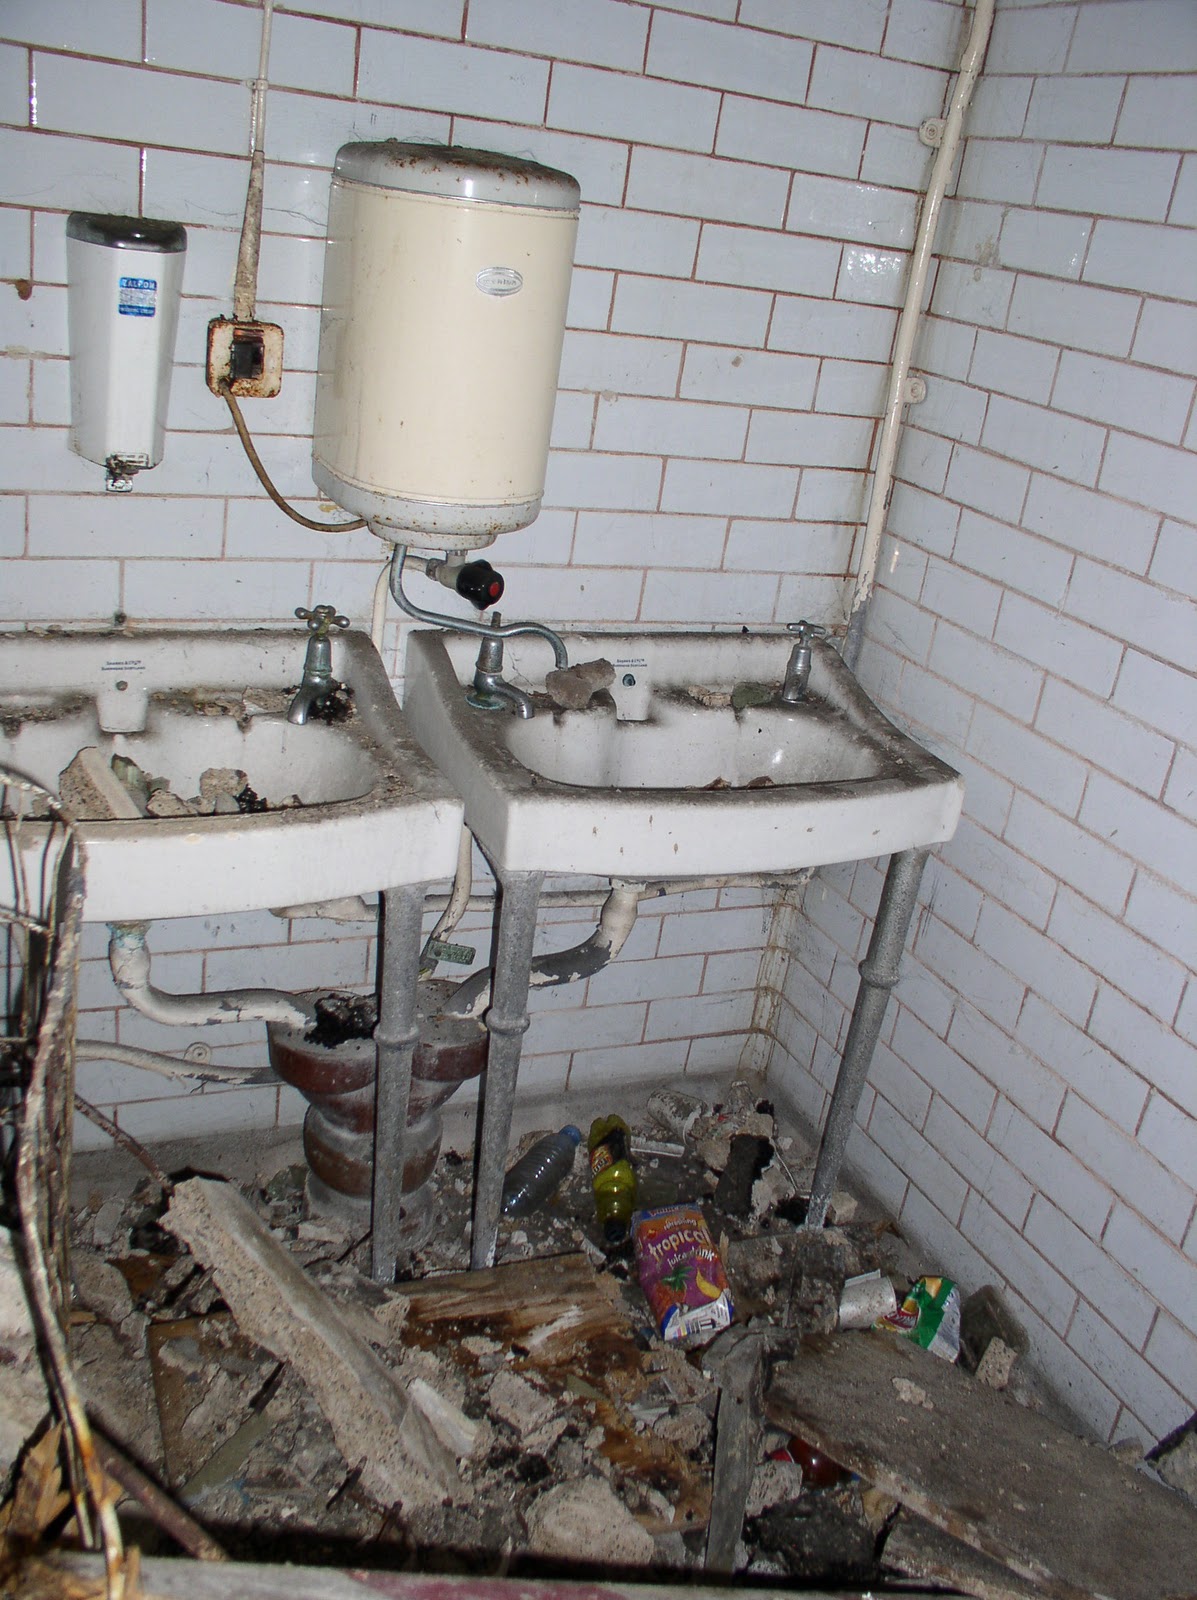 Заброшенный общественный туалет в Гайд-Парке превратился в квартиру 